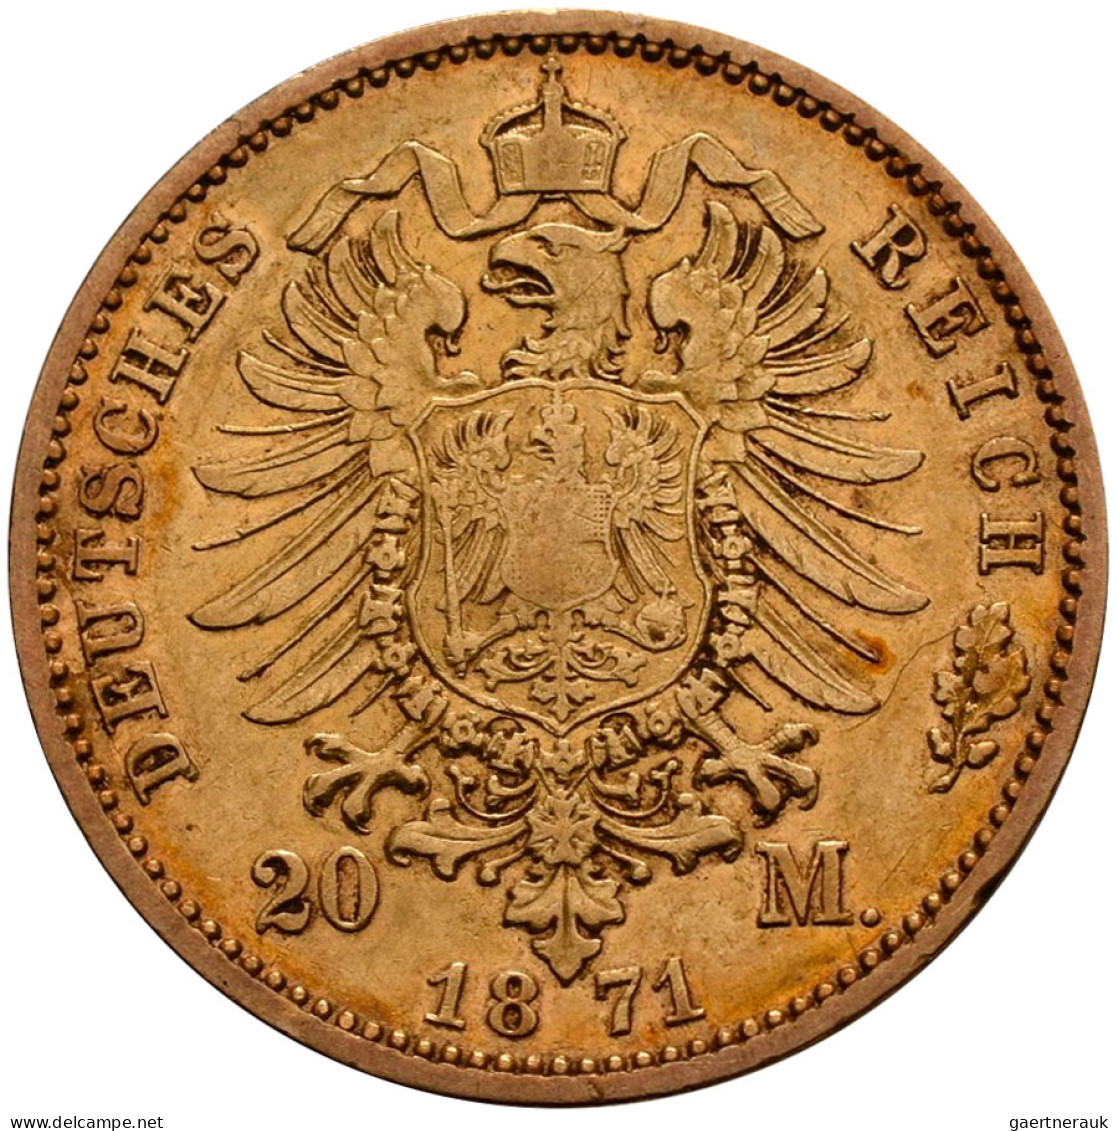 Preußen - Anlagegold: Wilhelm I. 1861-1888: 20 Mark 1871 A. Jaeger 243. Die Erst - 5, 10 & 20 Mark Gold